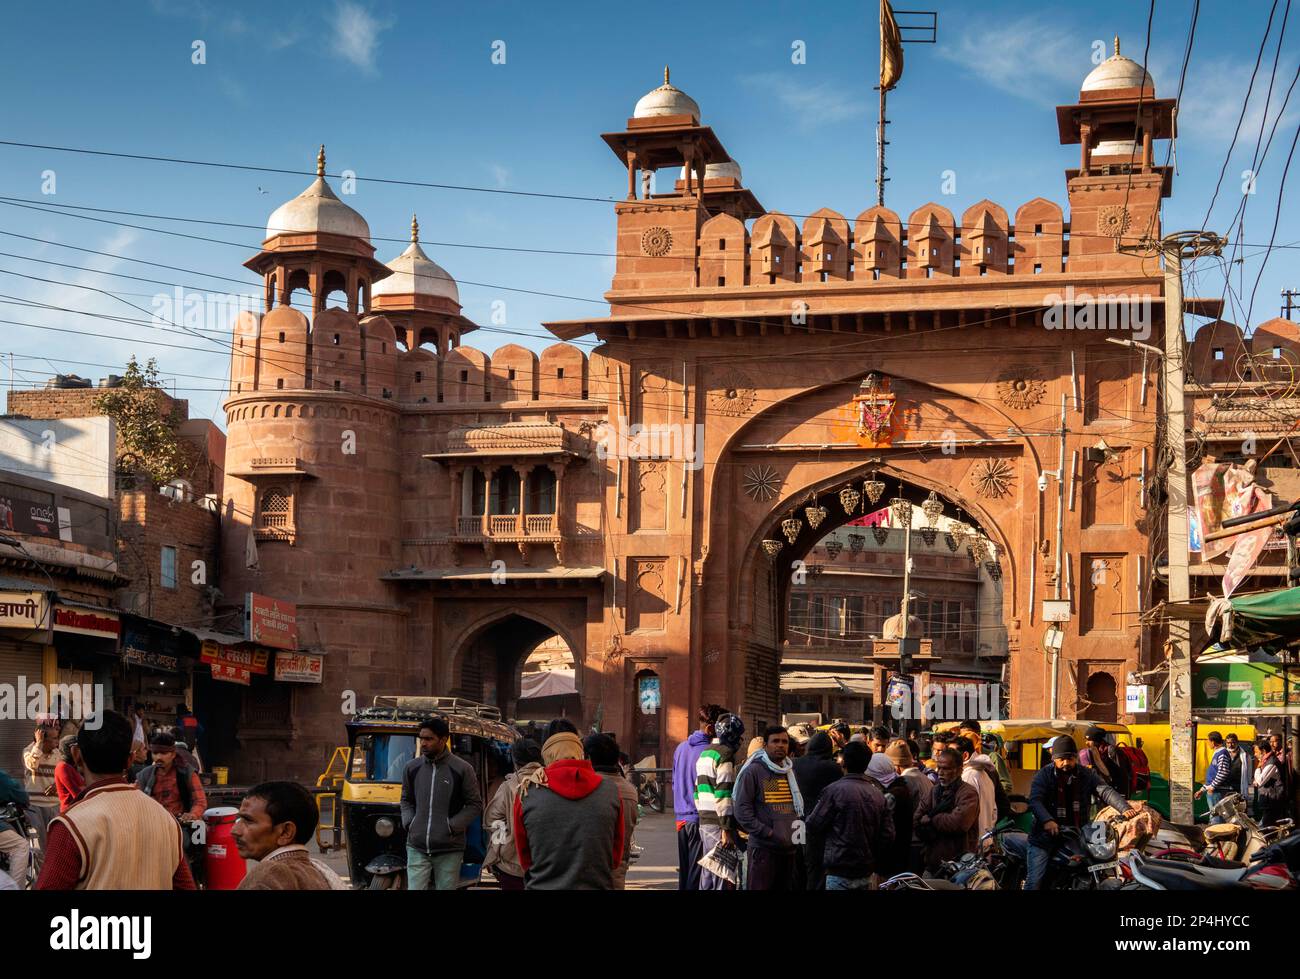 India, Rajasthan, Bikaner, traffic at Kota (Kothe) gate in Old City walls Stock Photo